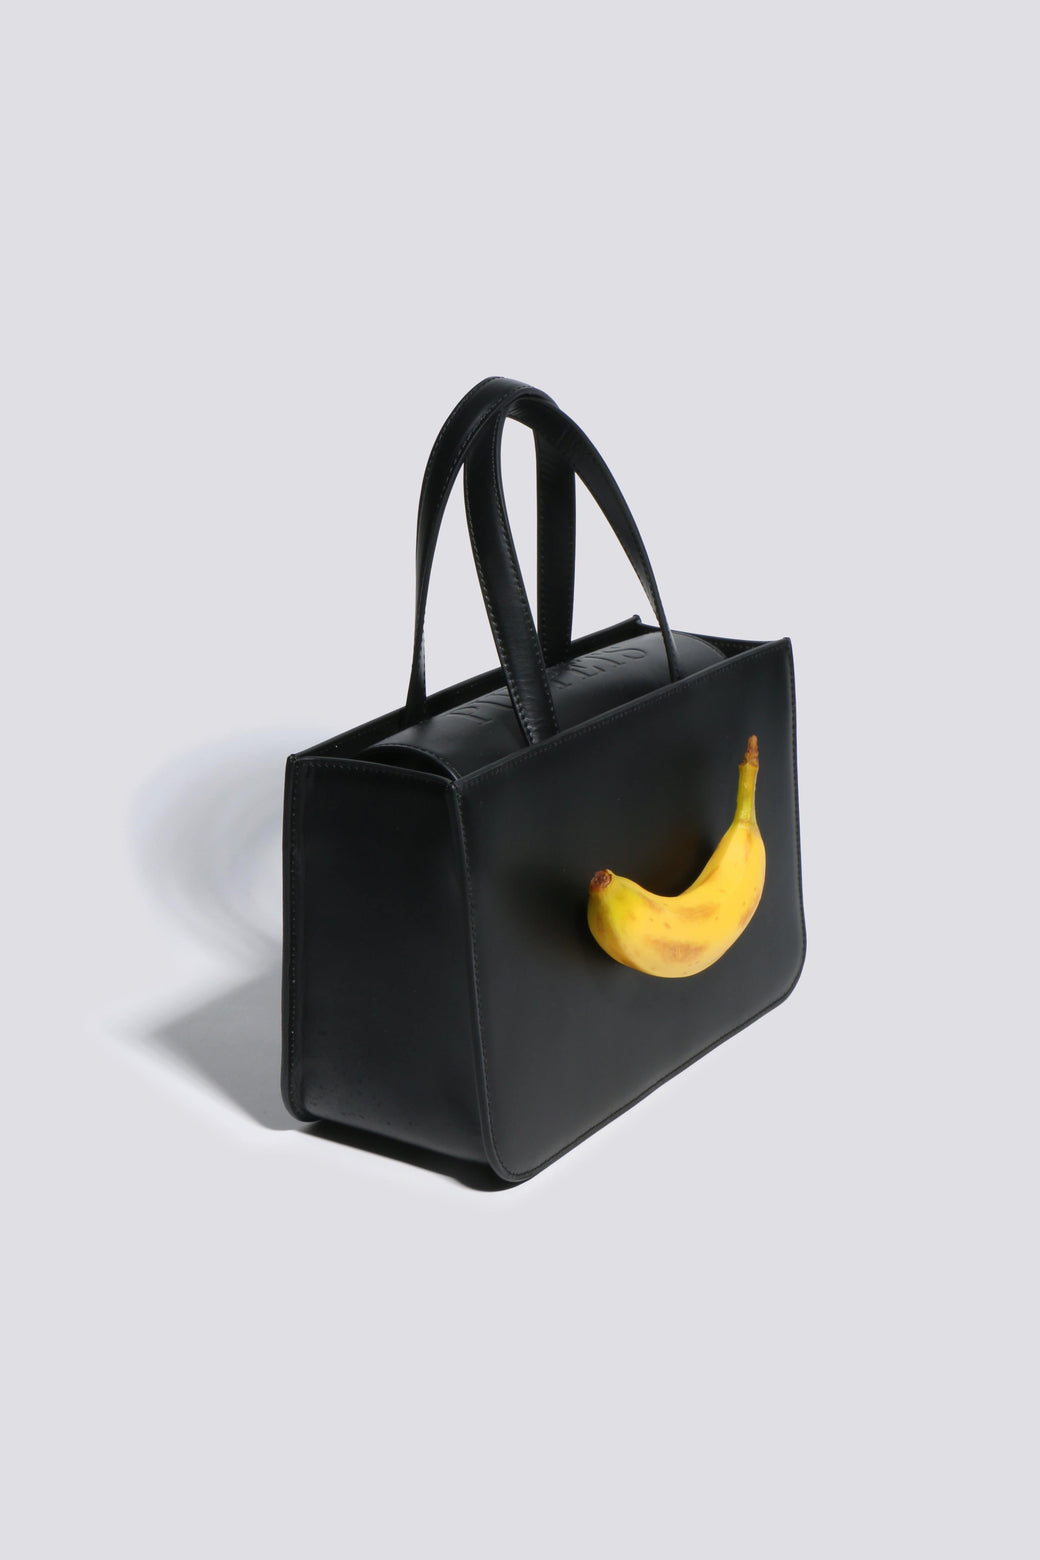 M nude plaited banana bag